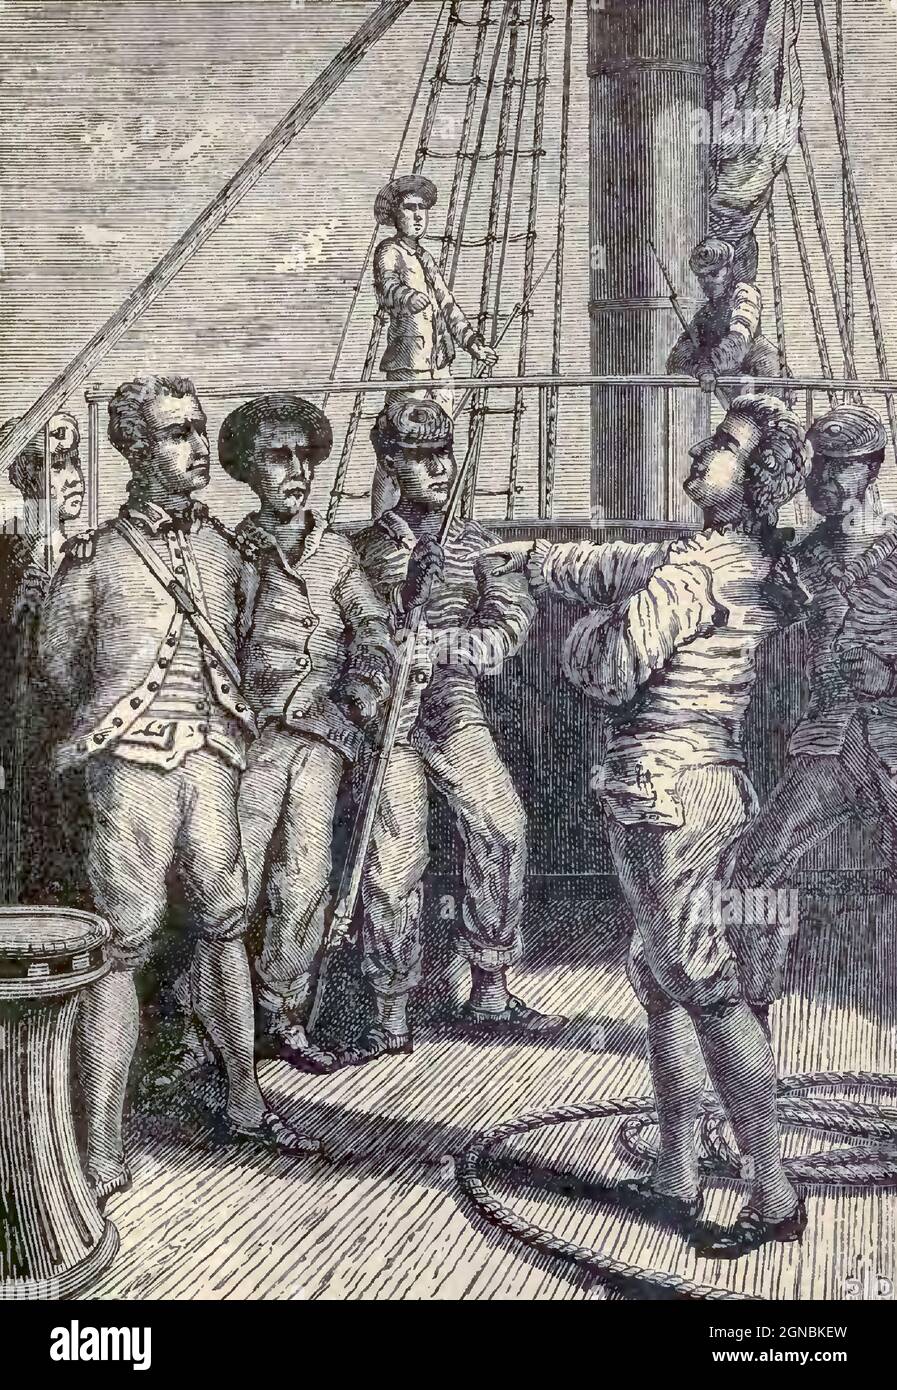 Kapitän Bligh in der Macht der Meuterer. HMS Bounty, auch bekannt als HM Armed Vessel Bounty, war ein kleines Handelsschiff, das die Royal Navy 1787 für eine botanische Mission kaufte. Das Schiff wurde unter dem Kommando von William Bligh in den Südpazifik geschickt, um Brotfruchtpflanzen zu erwerben und nach Westindien zu transportieren. Diese Mission wurde aufgrund einer Meuterei von 1789, die von dem amtierenden Leutnant Fletcher Christian angeführt wurde, nicht abgeschlossen, ein Vorfall, der heute im Volksmund als Meuterei auf der Bounty bekannt ist. Die Meuterer verbrannten Bounty später, als sie auf Pitcairn Island vor Anker lag. Stockfoto